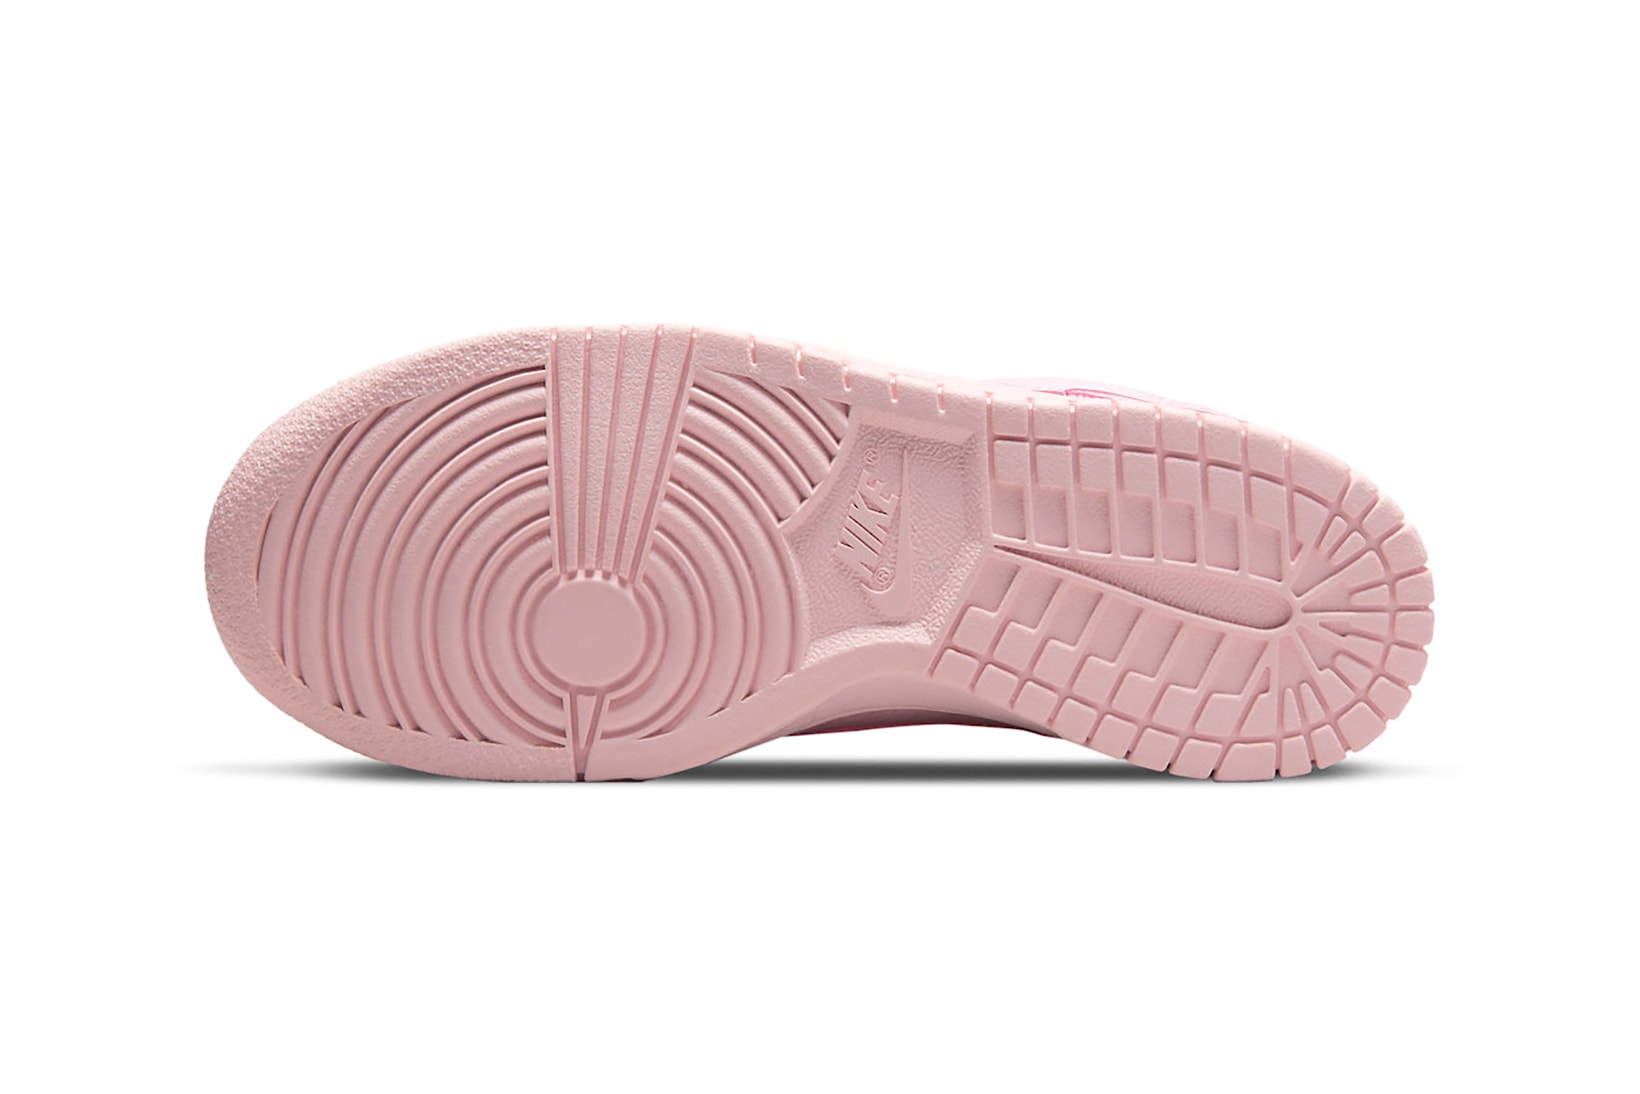 Nike Dunk Low Prism Pink Sneakers Footwear Shoes Kicks 